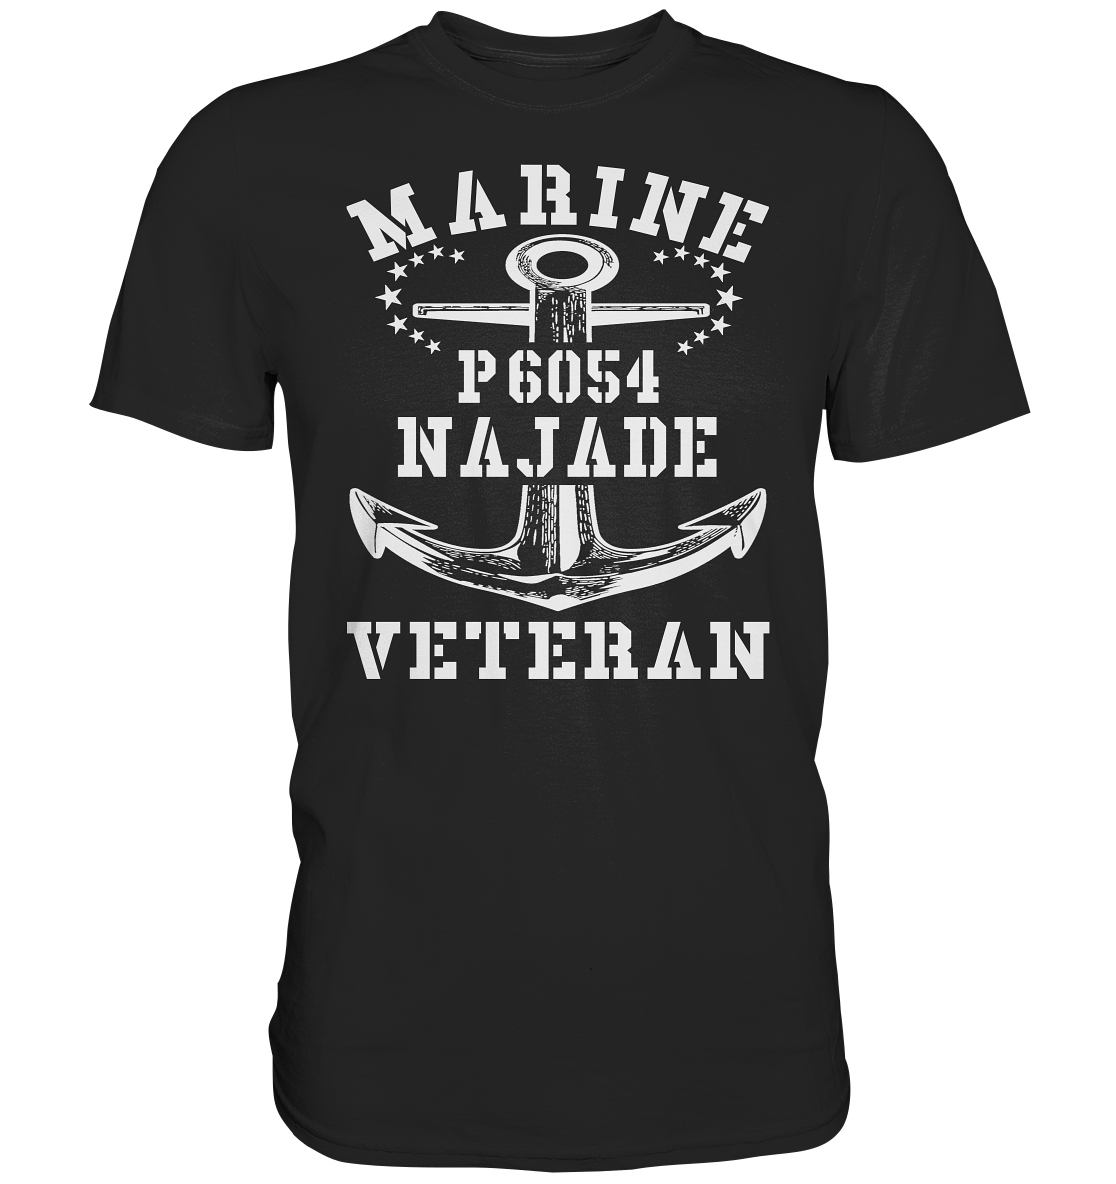 U-Jagdboot P6054 NAJADE Marine Veteran - Premium Shirt